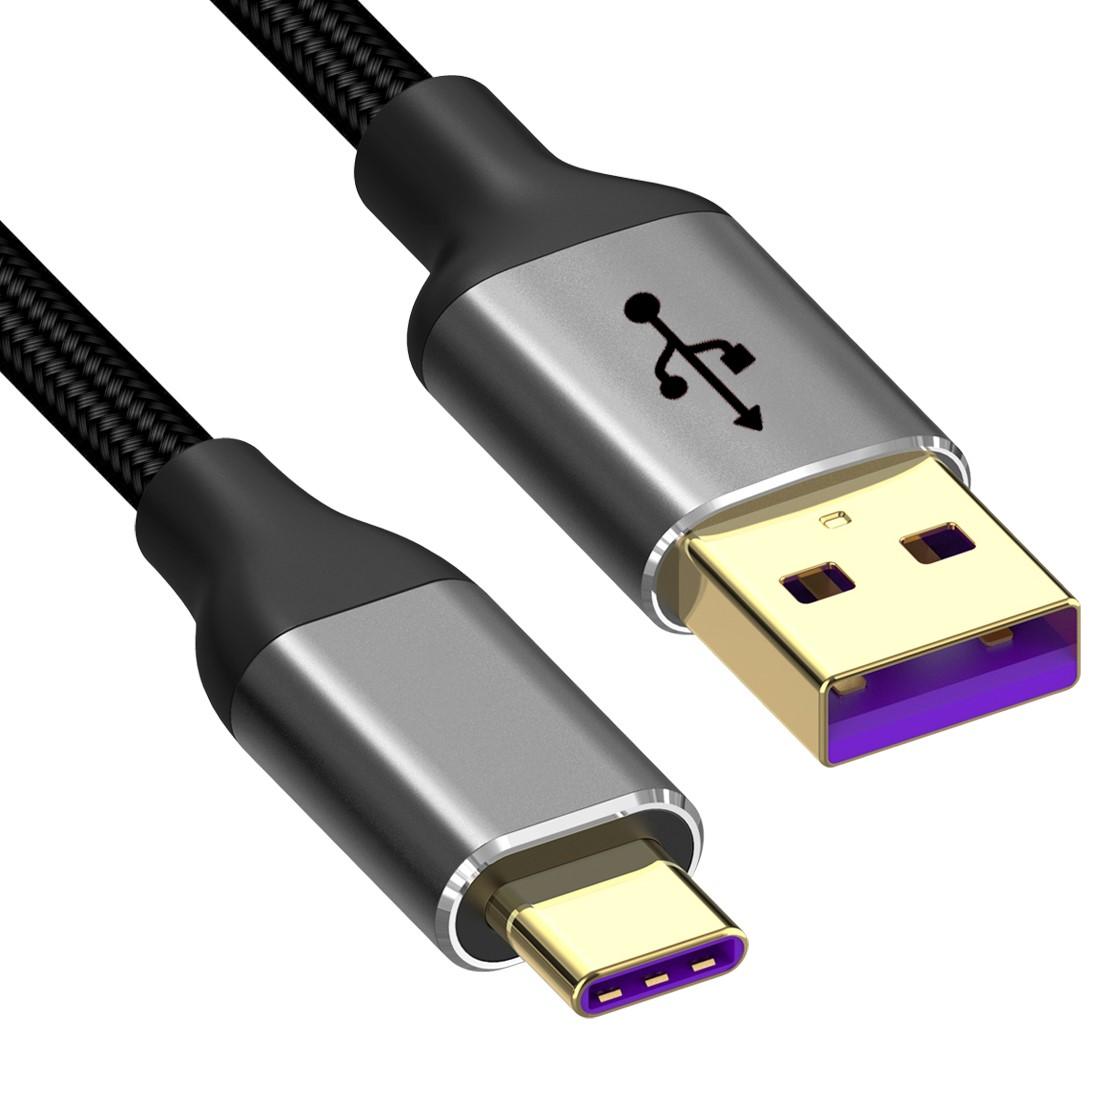 USB-C datakabel - 0.5 meter - Zwart - Allteq